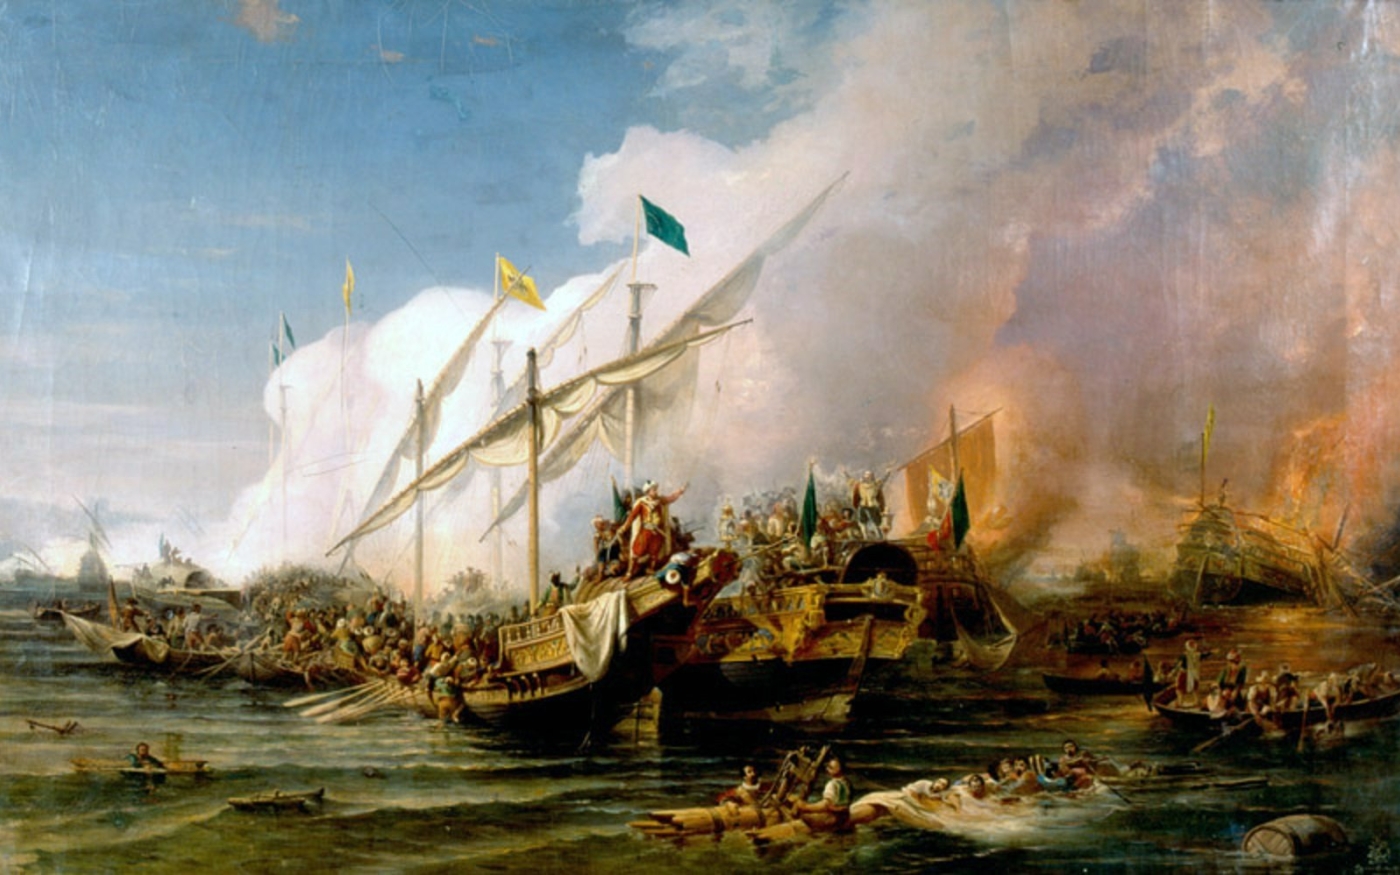 La bataille de Préveza par les artistes ottomans Osman Nuri Pacha et Hovhannes Umed Behzad, XIXe siècle (Musée naval turc)